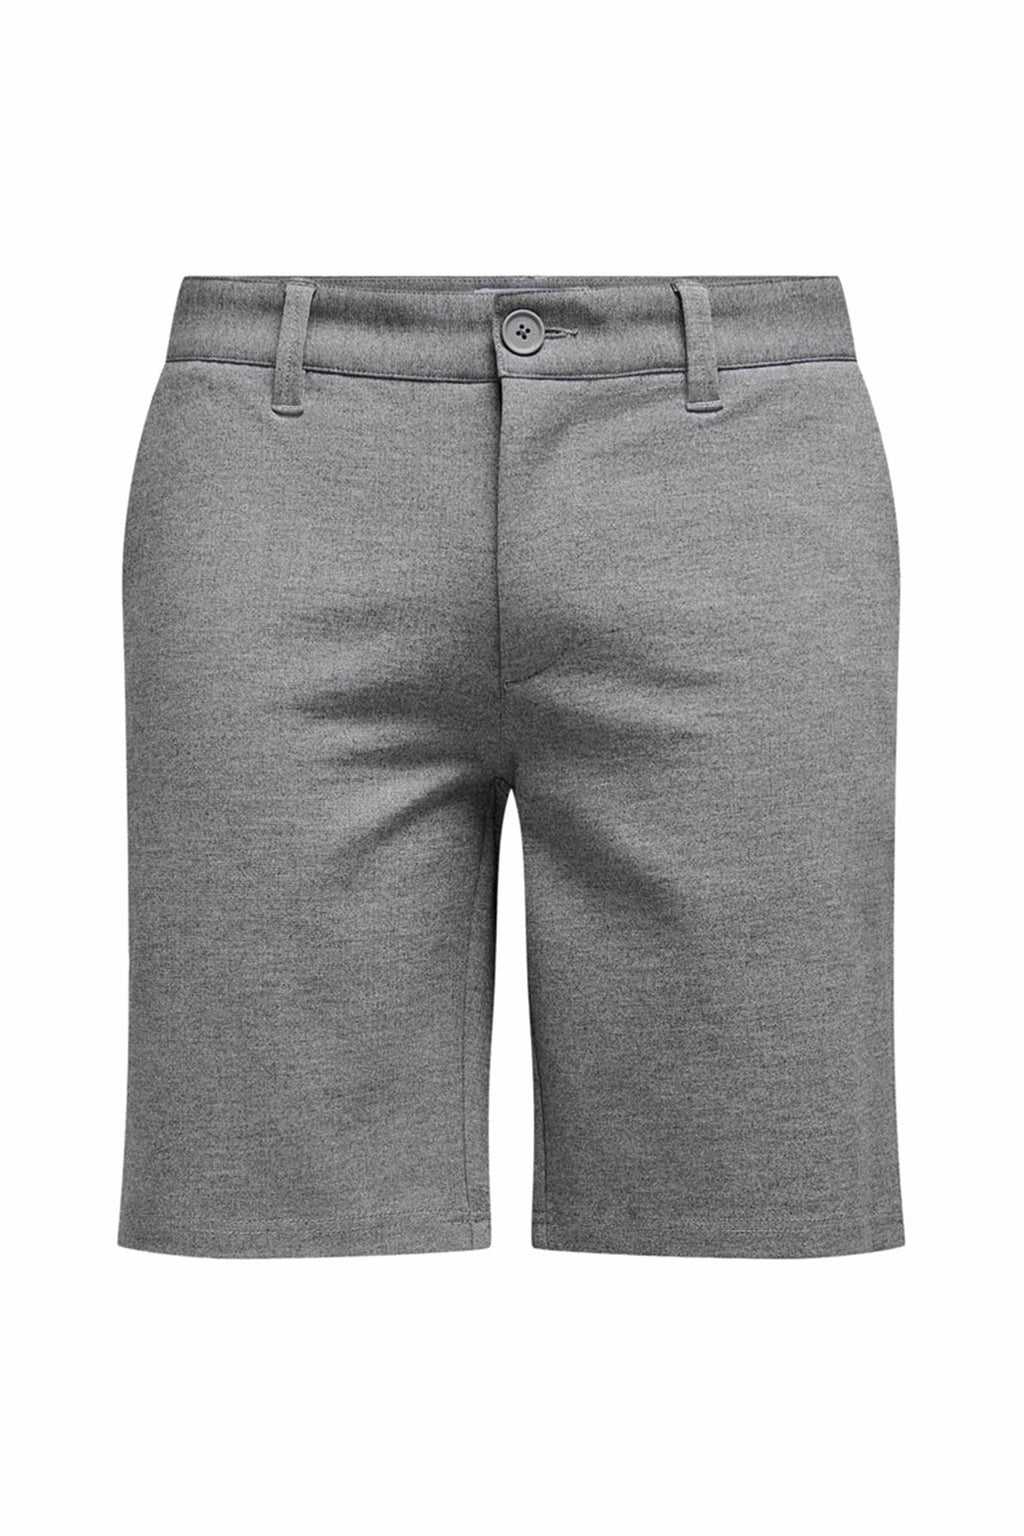 性能短裤 - 灰色混合物